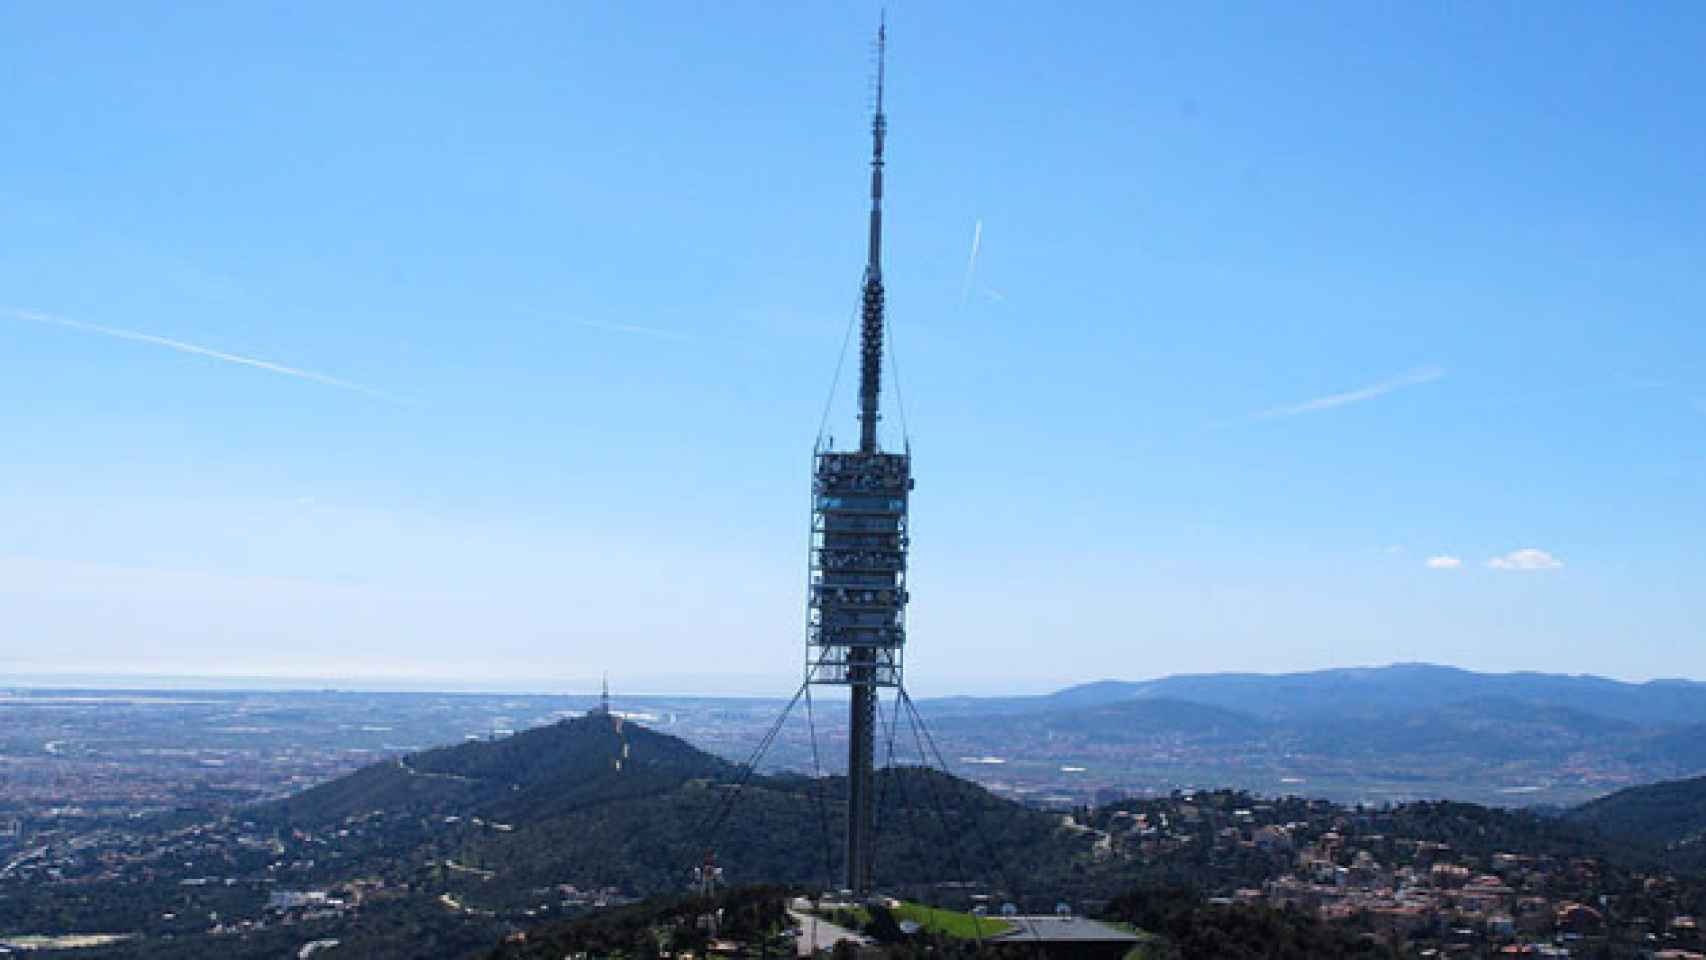 La Torre de Collserola de Barcelona, una de las principales infraestructuras de telecomunicaciones de Cataluña. / CG